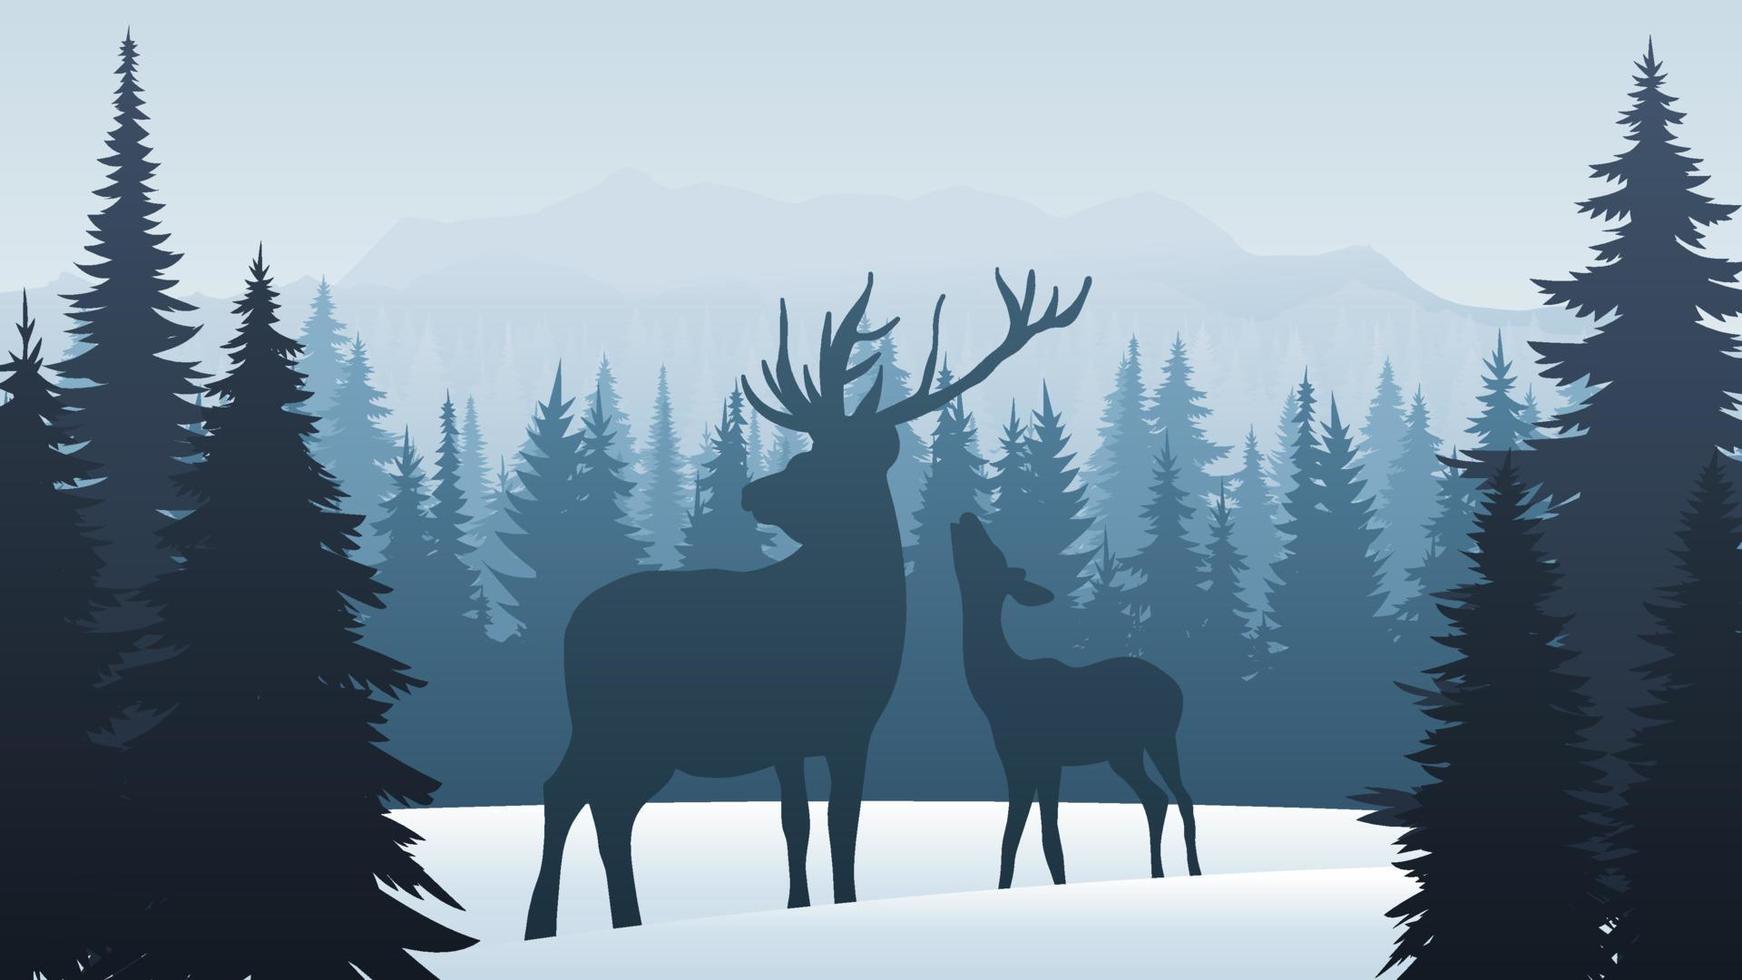 naturaleza montañas paisaje silueta. bosque de coníferas de invierno con nieve, clima helado. animales en el bosque de pinos, los ciervos se quedan en el bosque. ilustración vectorial fondo de navidad. vector